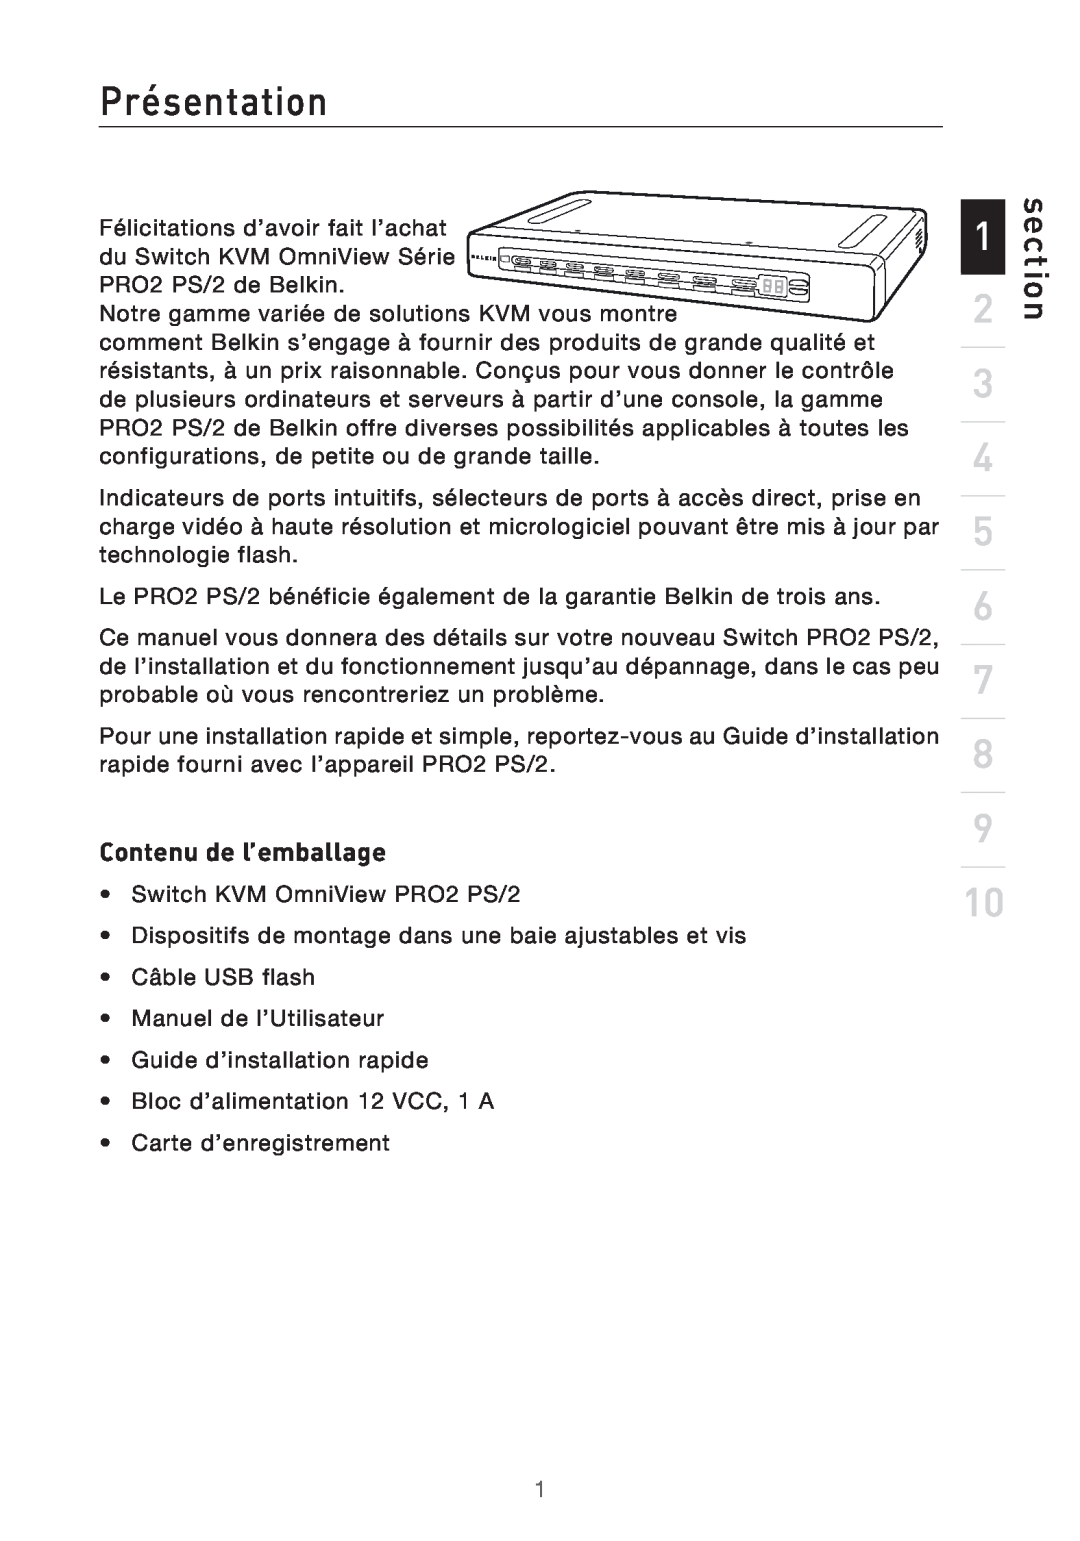 Belkin PRO2 PS/2 user manual Présentation, section, Contenu de l’emballage 